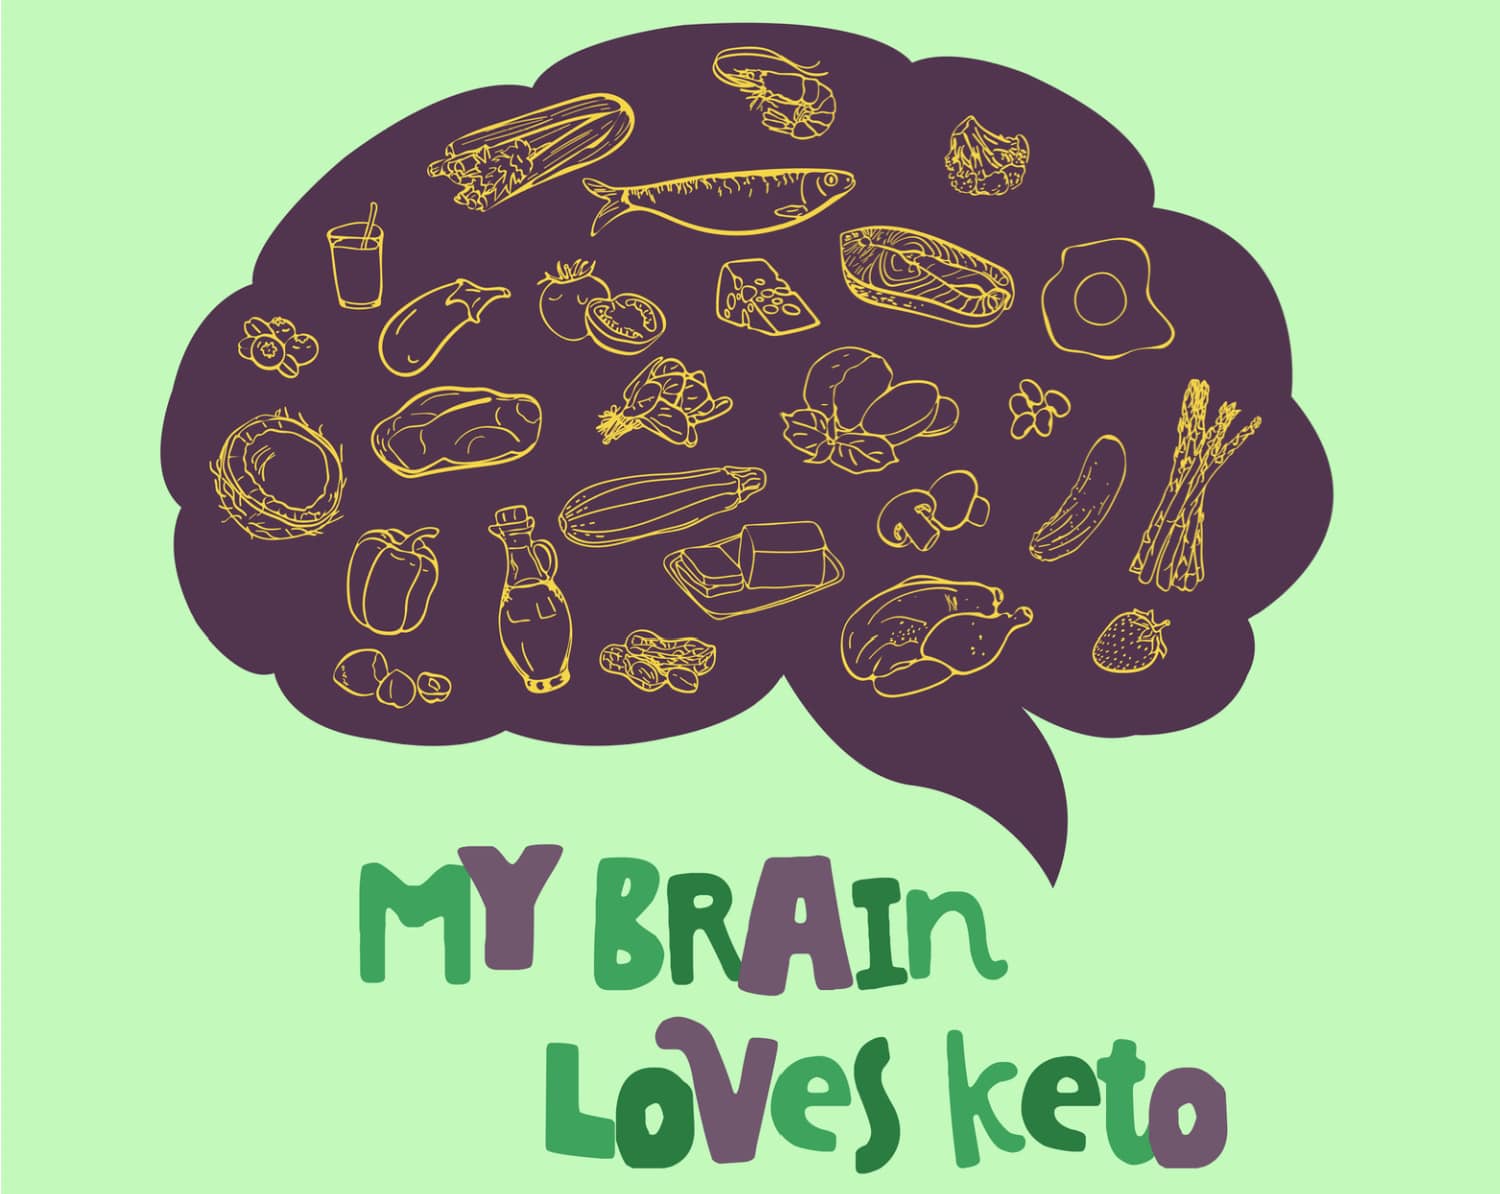 내 뇌가 케토를 좋아하는 뇌의 그림 